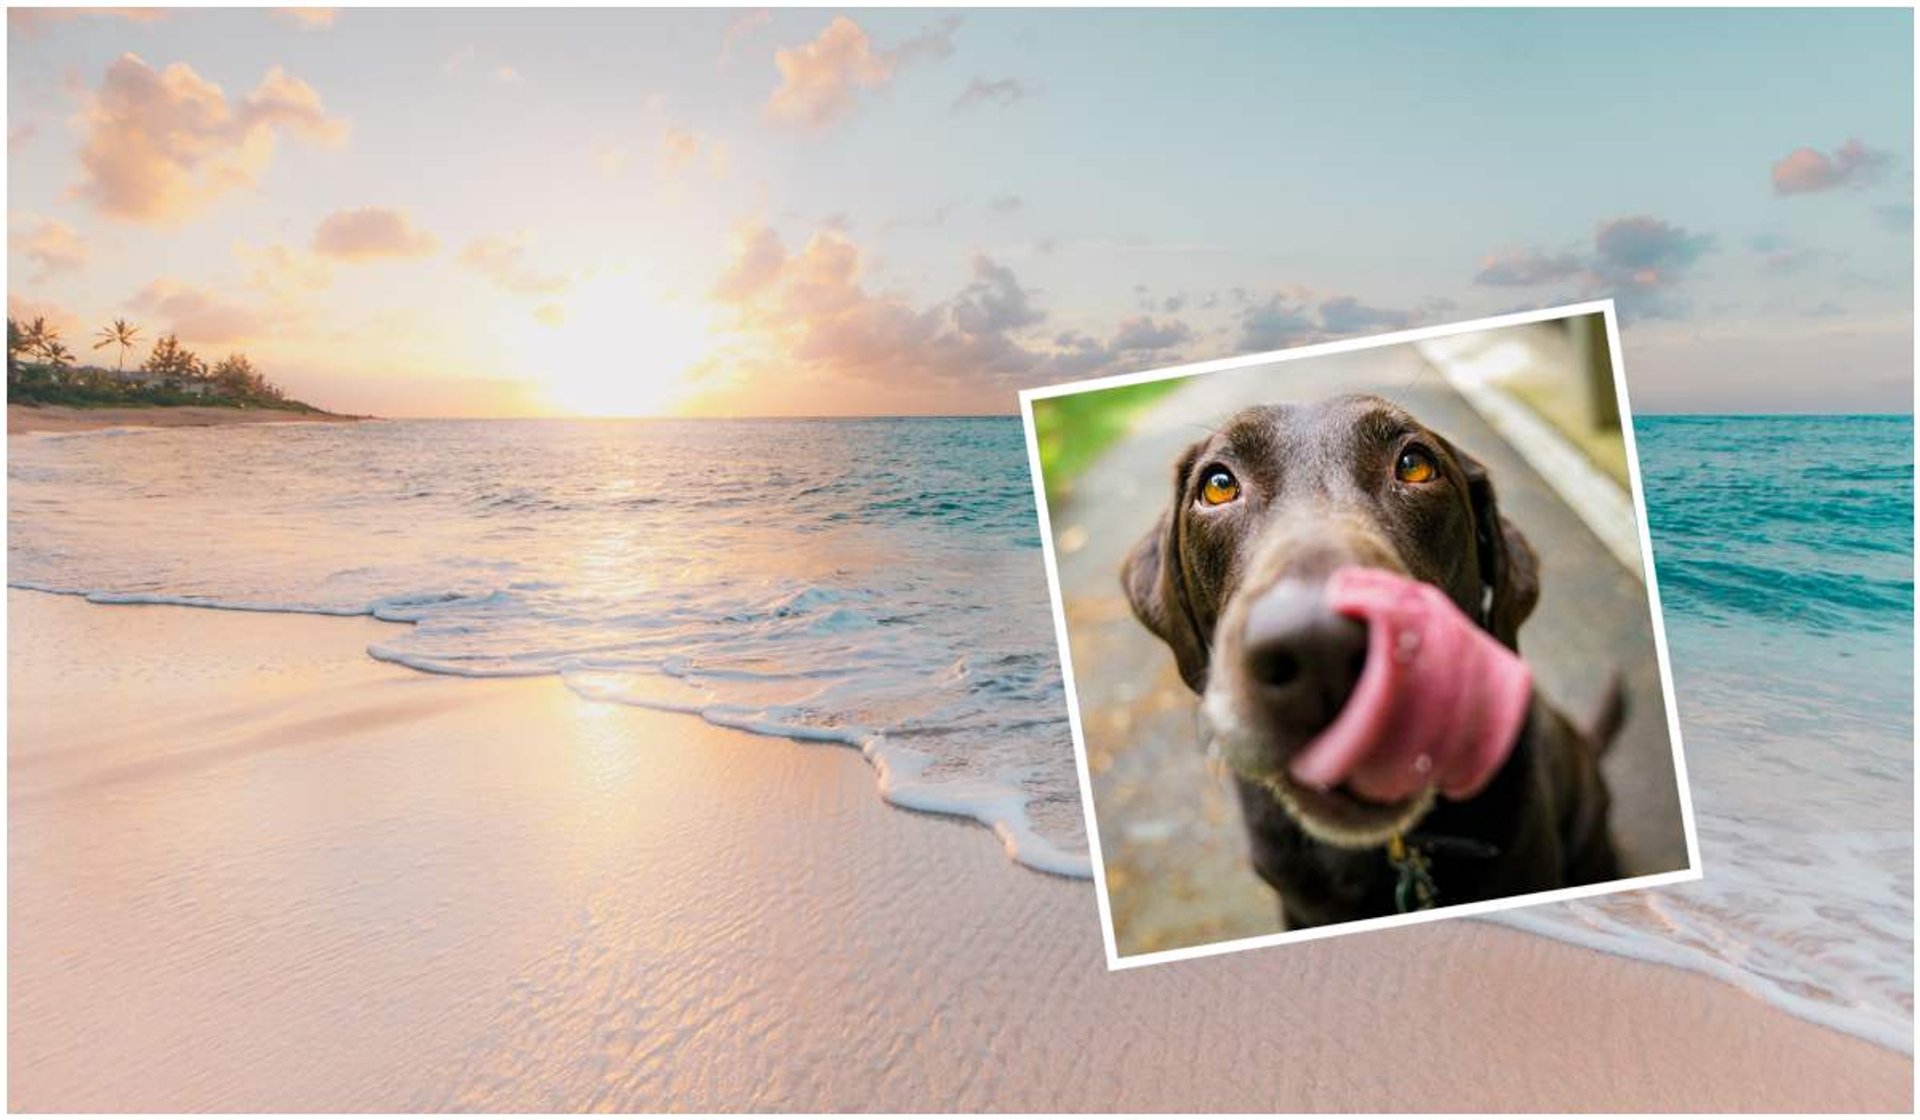 Psa na plaży może spotkać zagrożenie